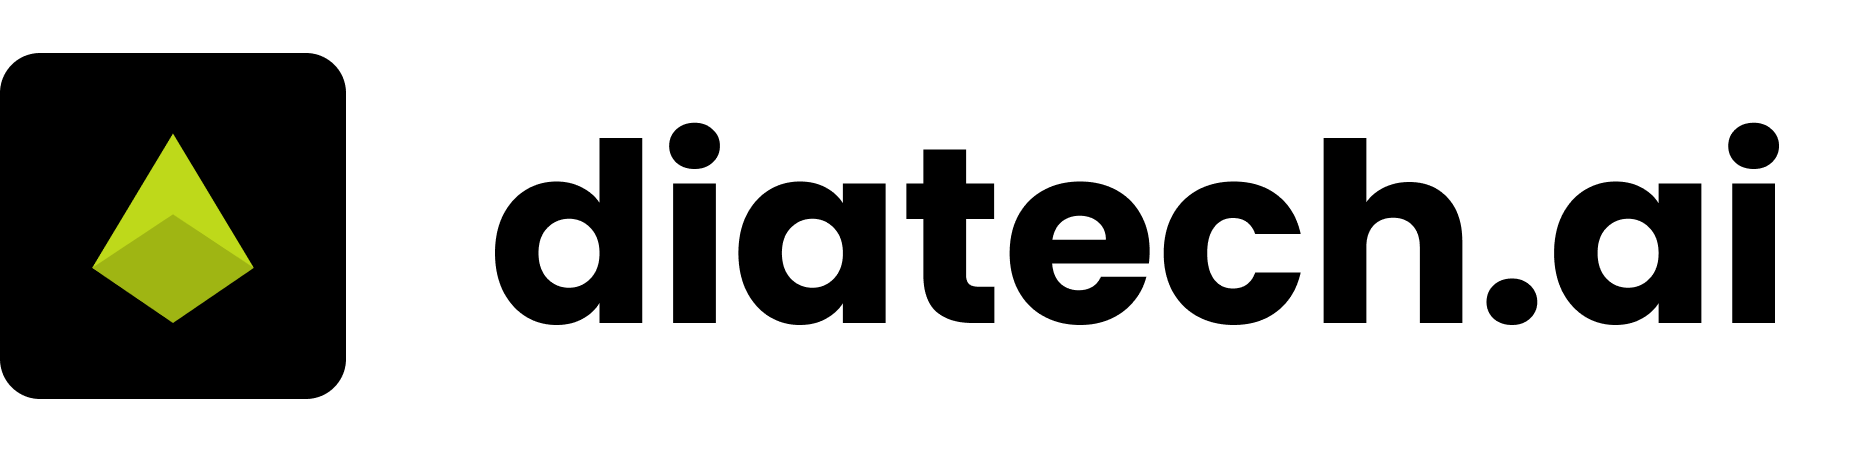 Diatech Logo